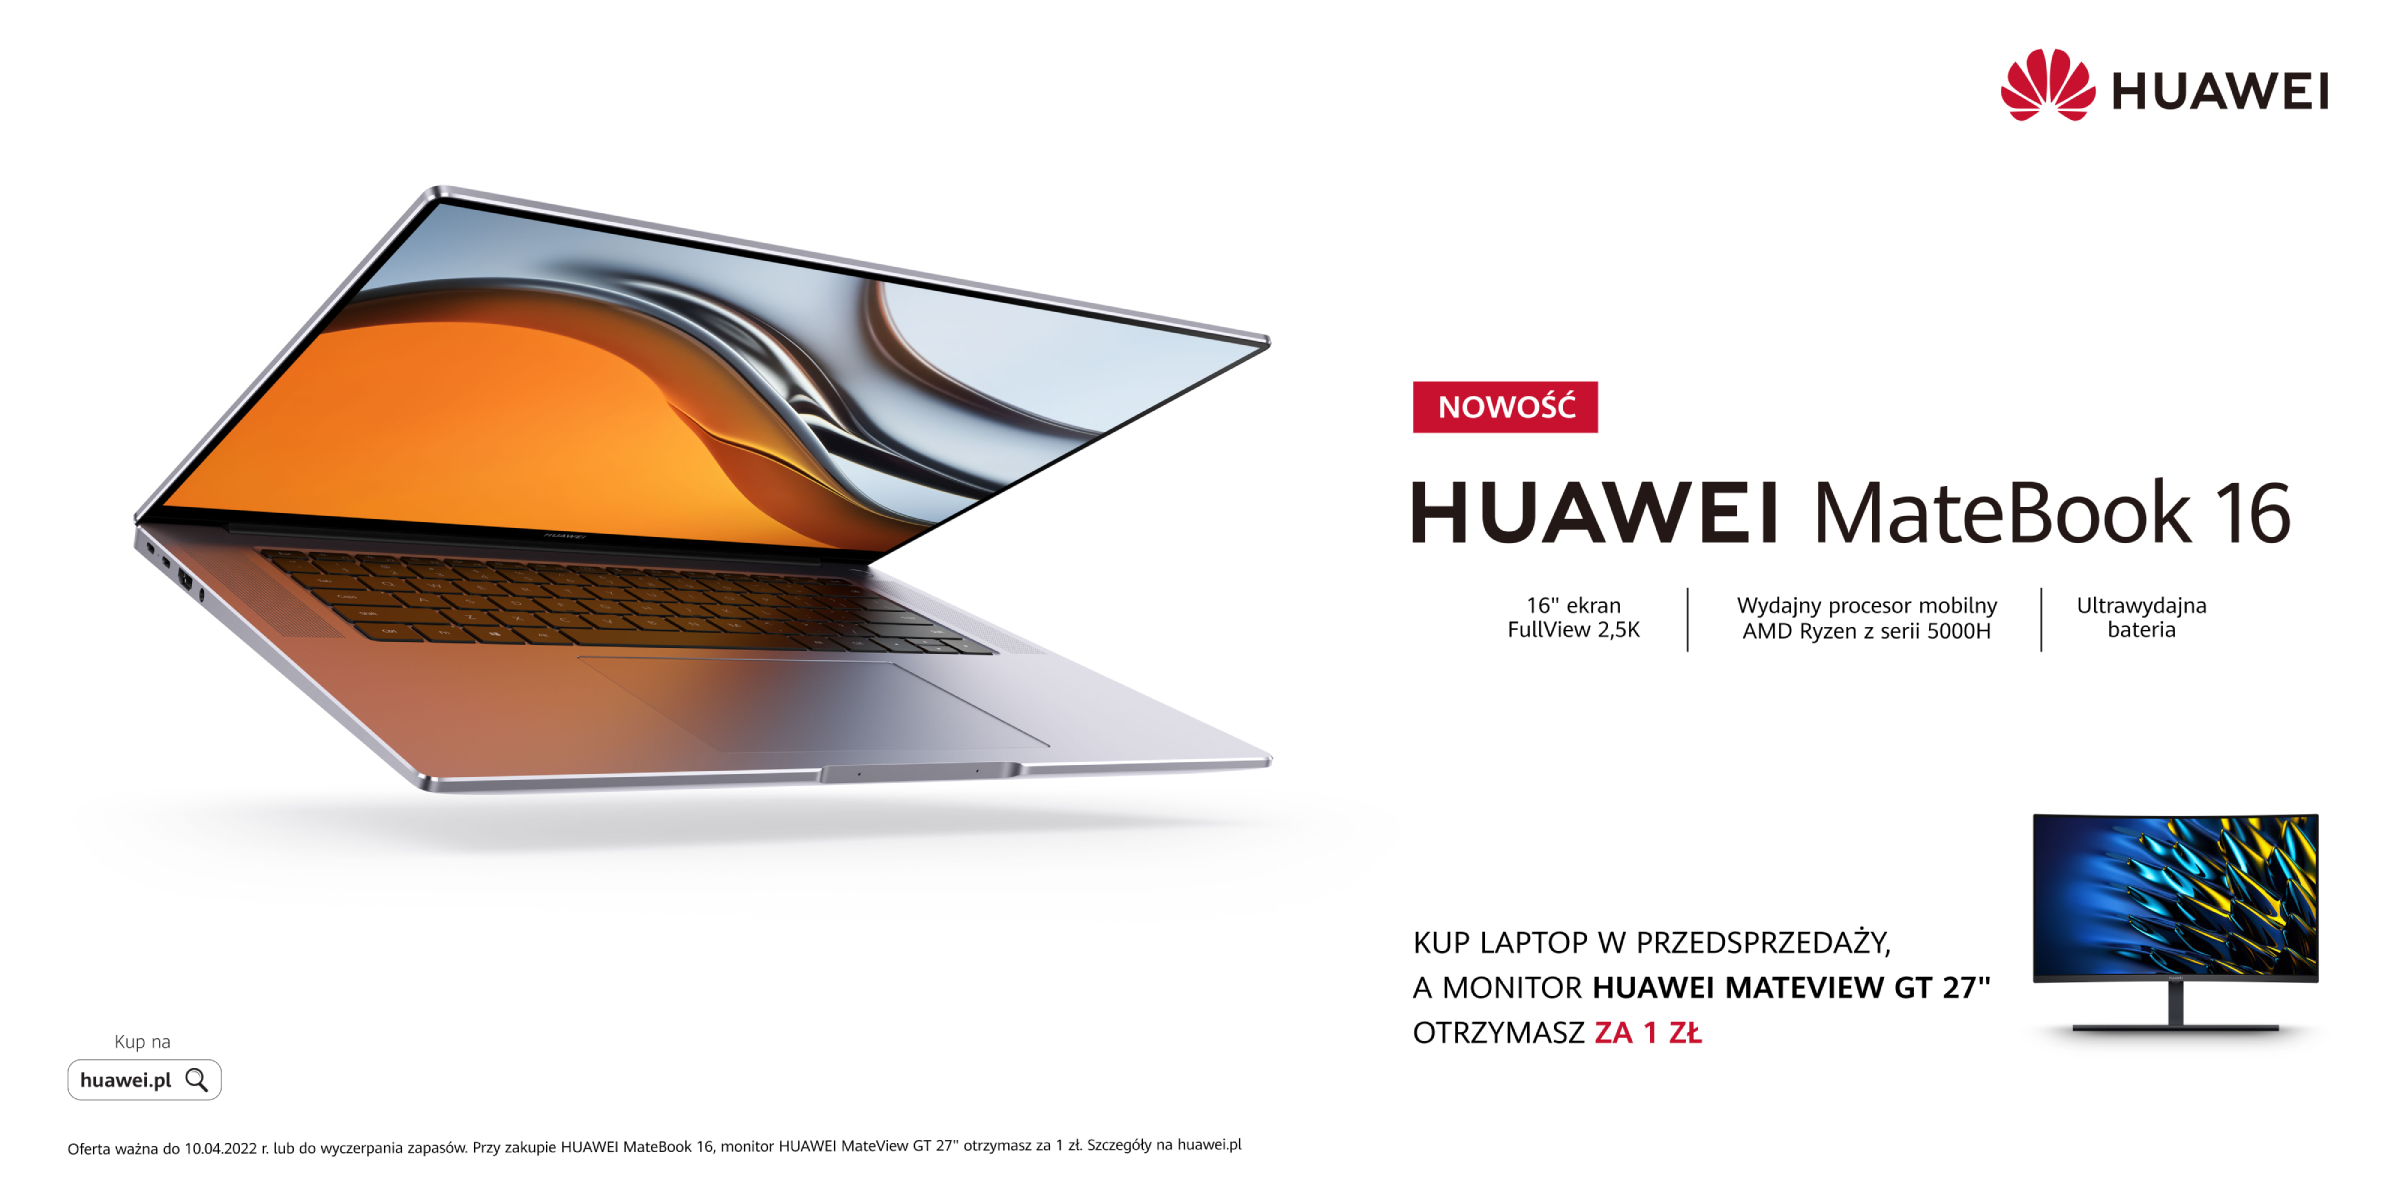 Dwa nowe modele laptopów w ofercie Huawei – rusza sprzedaż Huawei MateBook E i Huawei MateBook 16